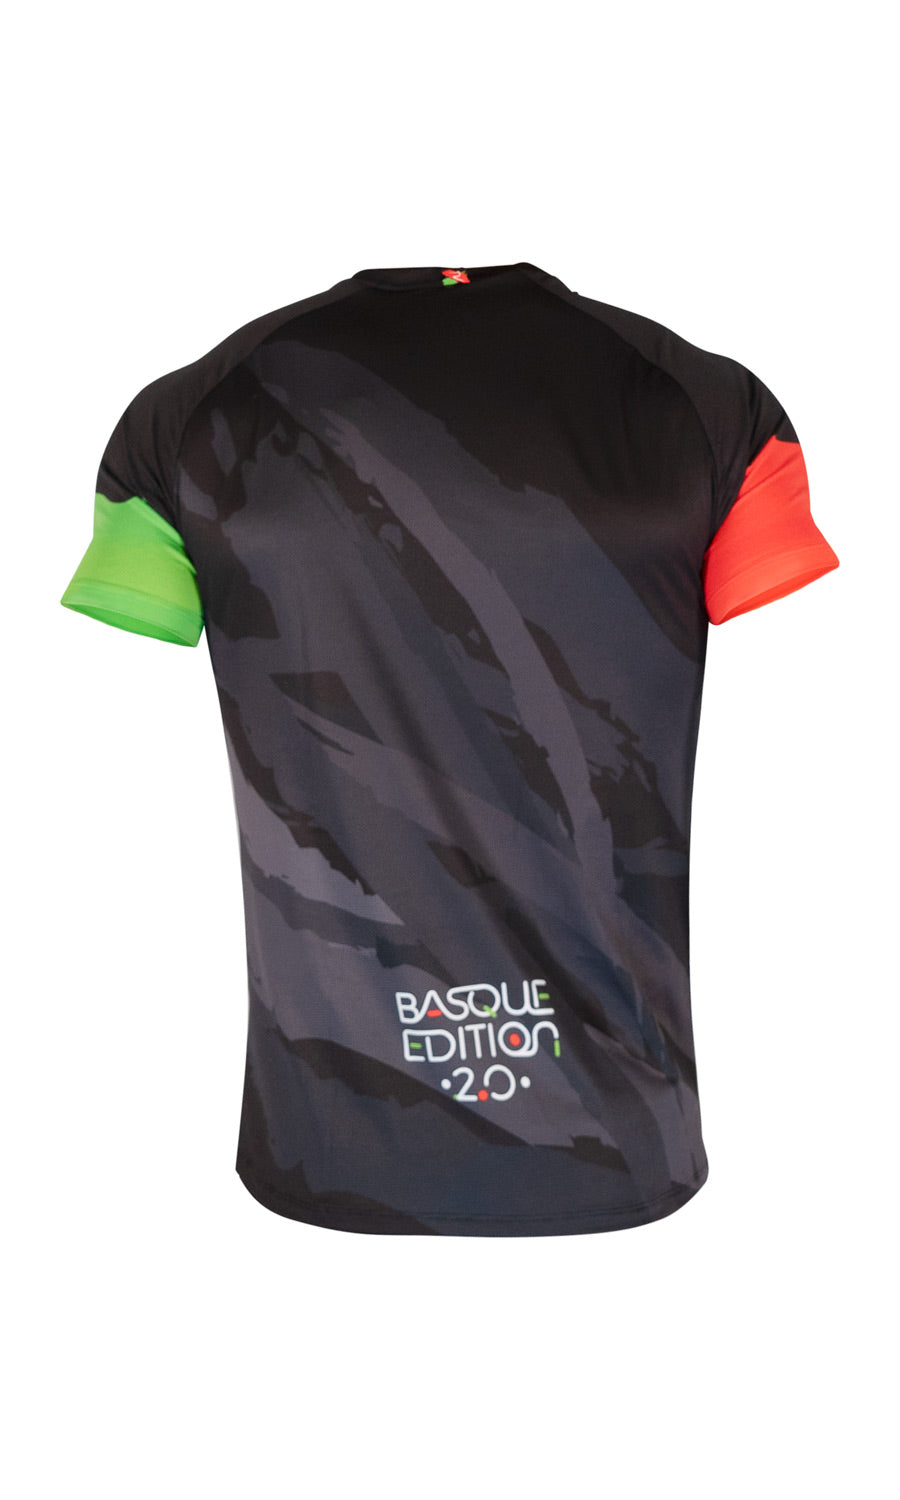 EUSKADI Running T-shirt — 2.0